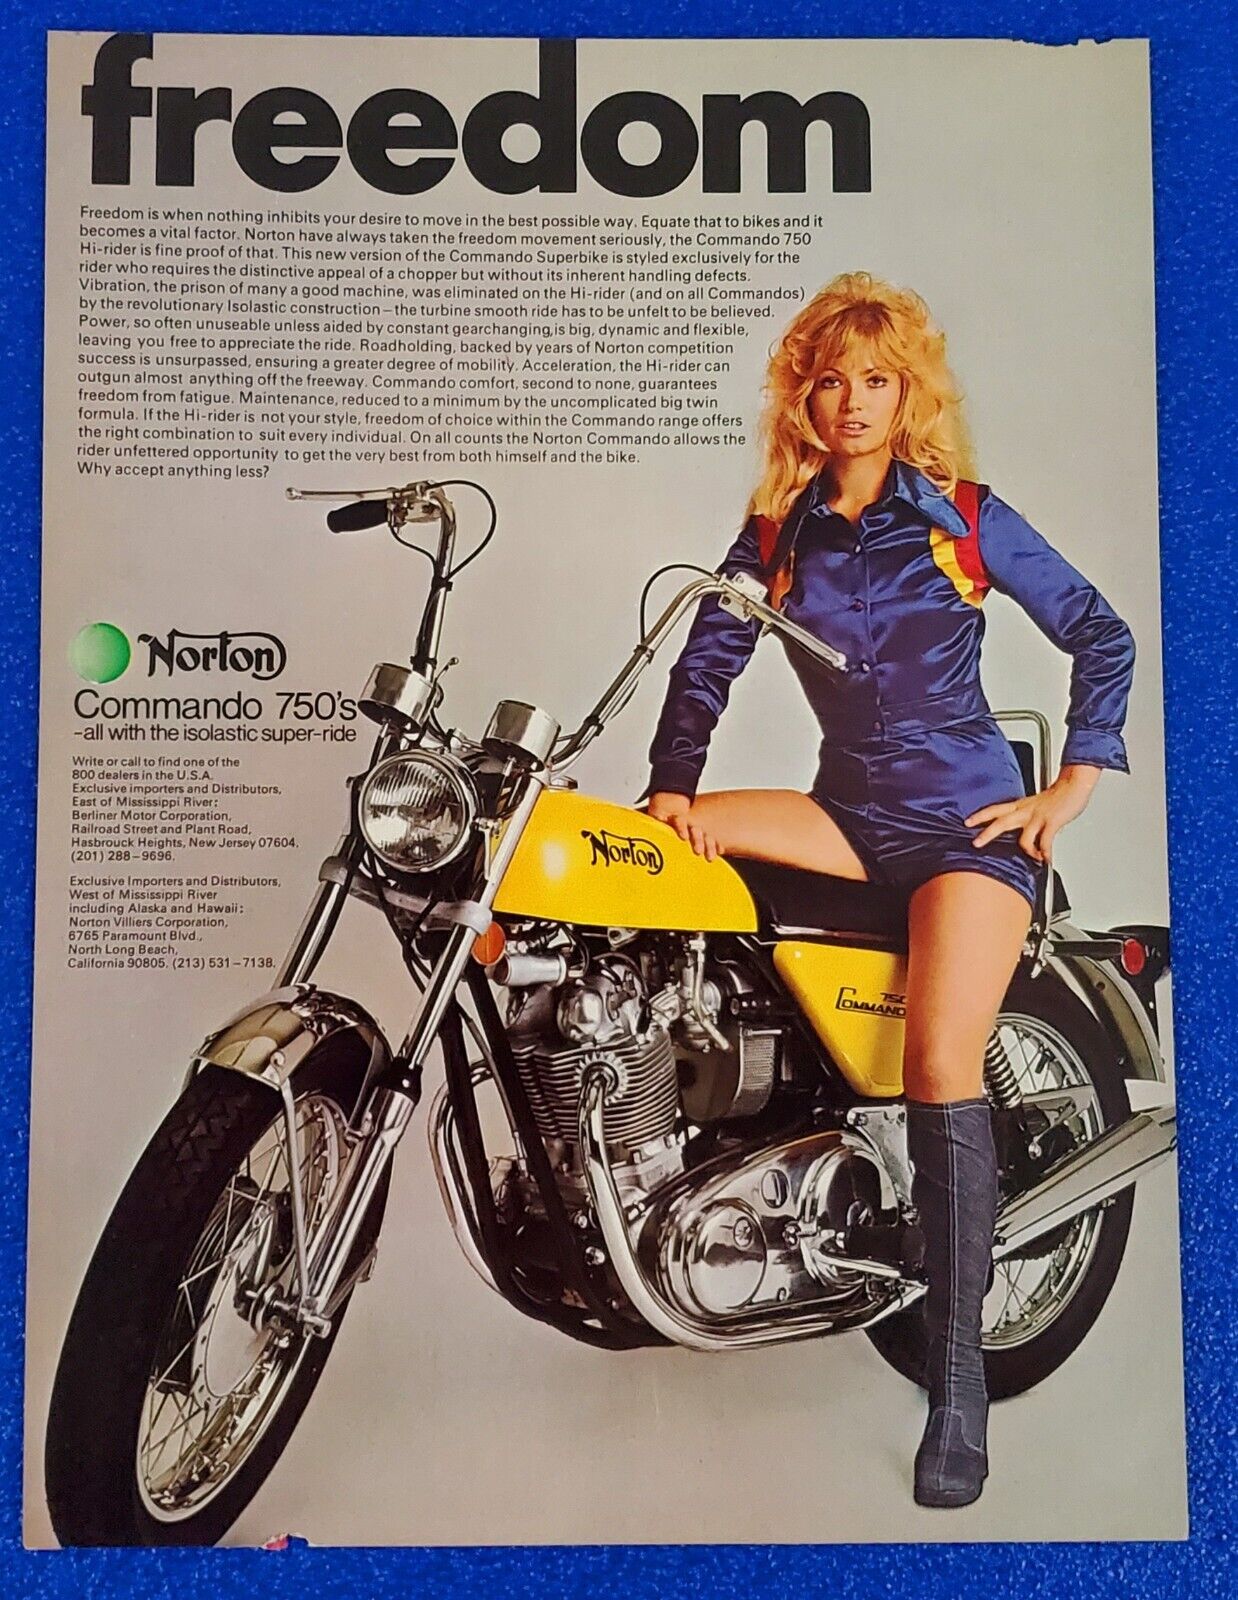 1971 NORTON COMMANDO 750cc MOTORCYCLE ORIGINAL COLOR PRINT AD (LOT YELLOW S24)